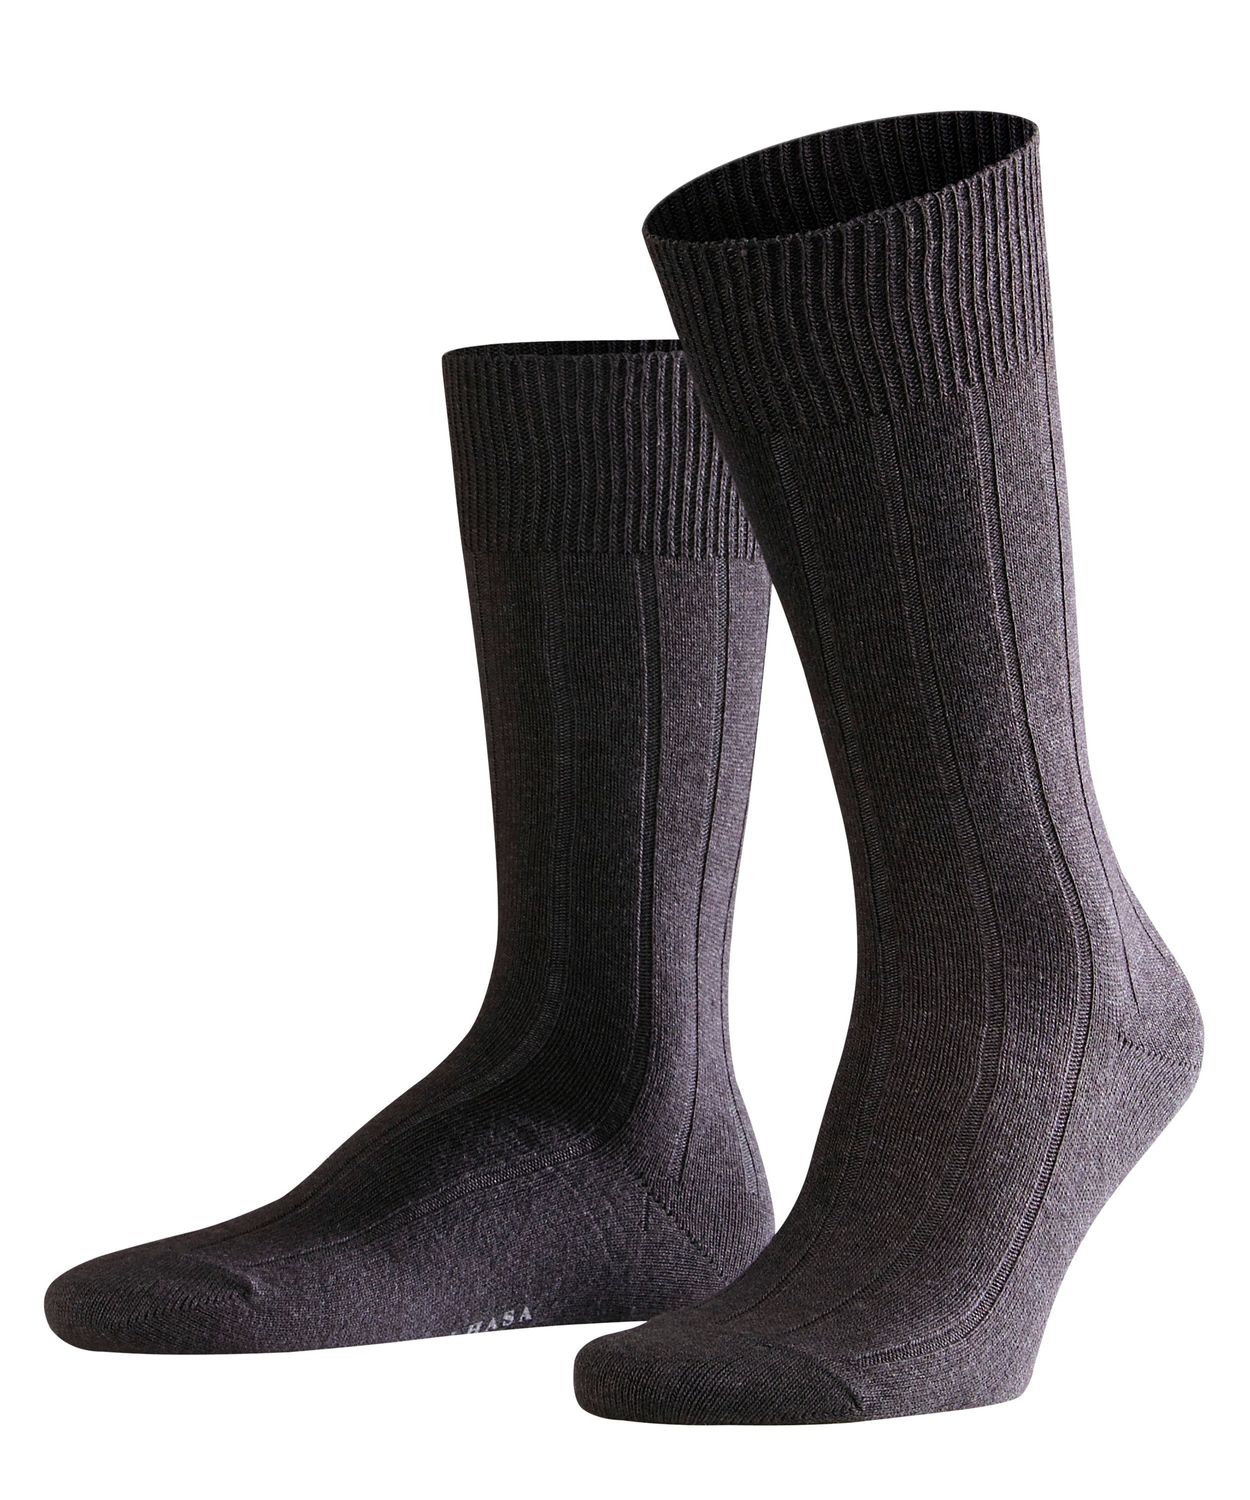 Falke Herren Socken Lhasa Rib Hersteller: Falke Bestellnummer:4043876261690